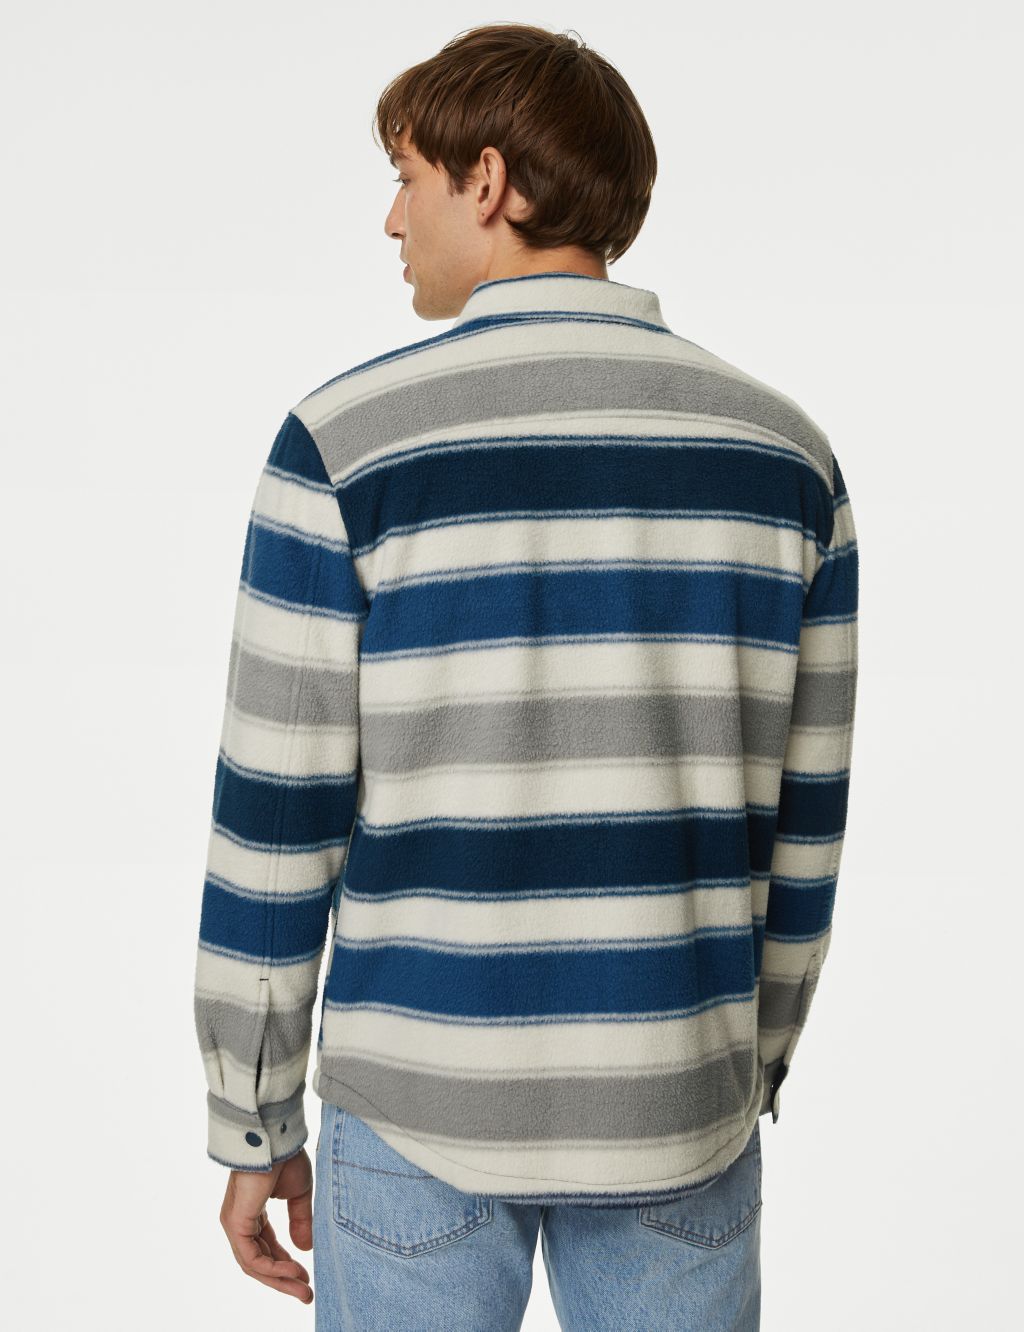 Fleece Striped Overshirt image 5